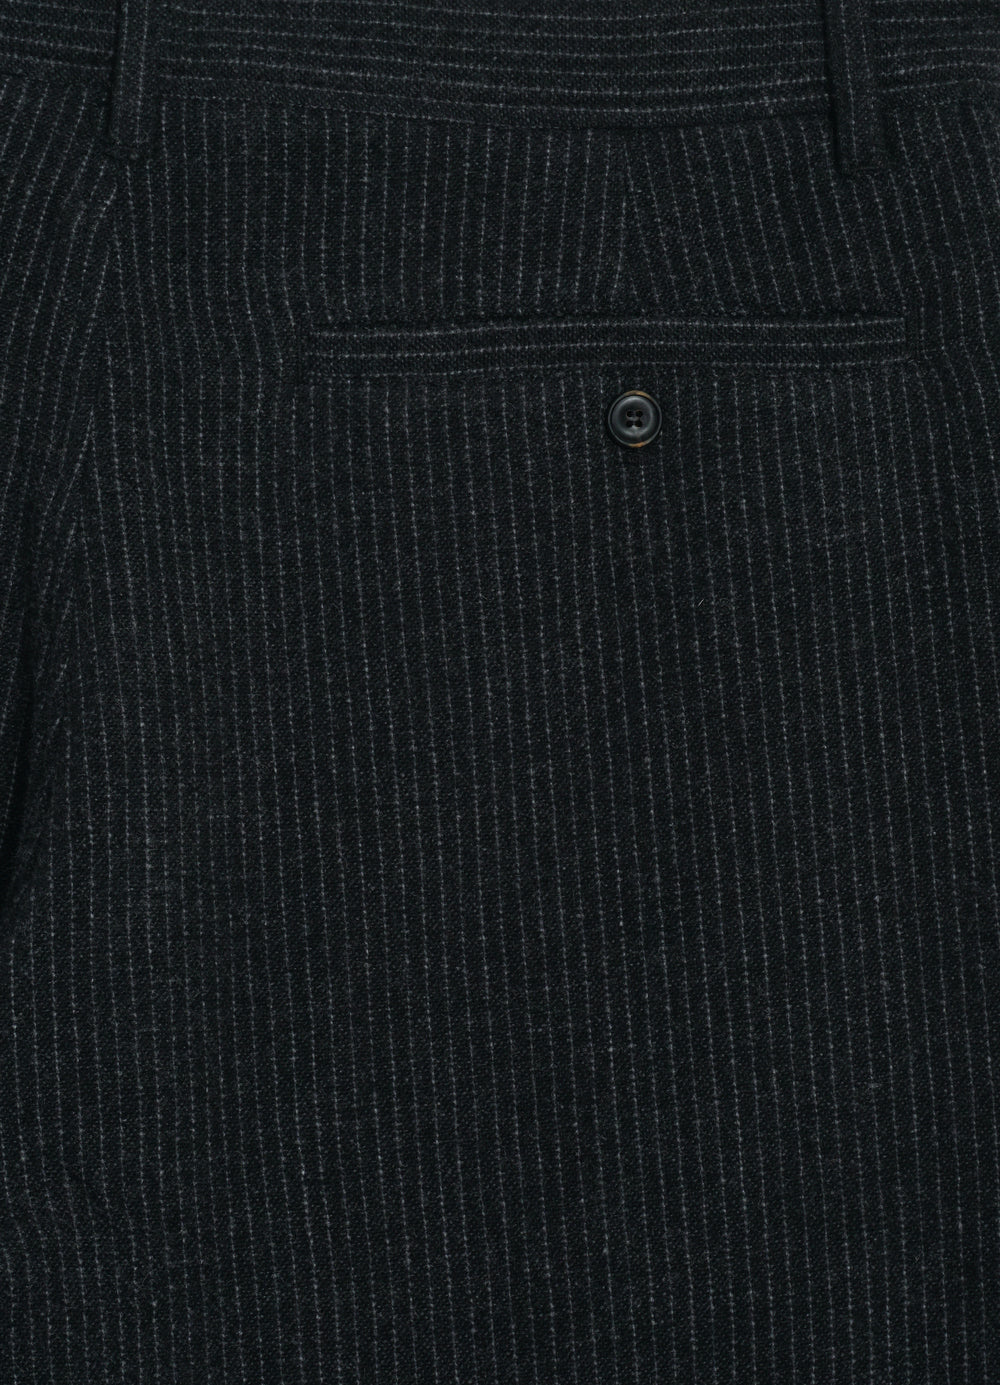 KEN | Wide Cut Trousers | Black Wool Pin